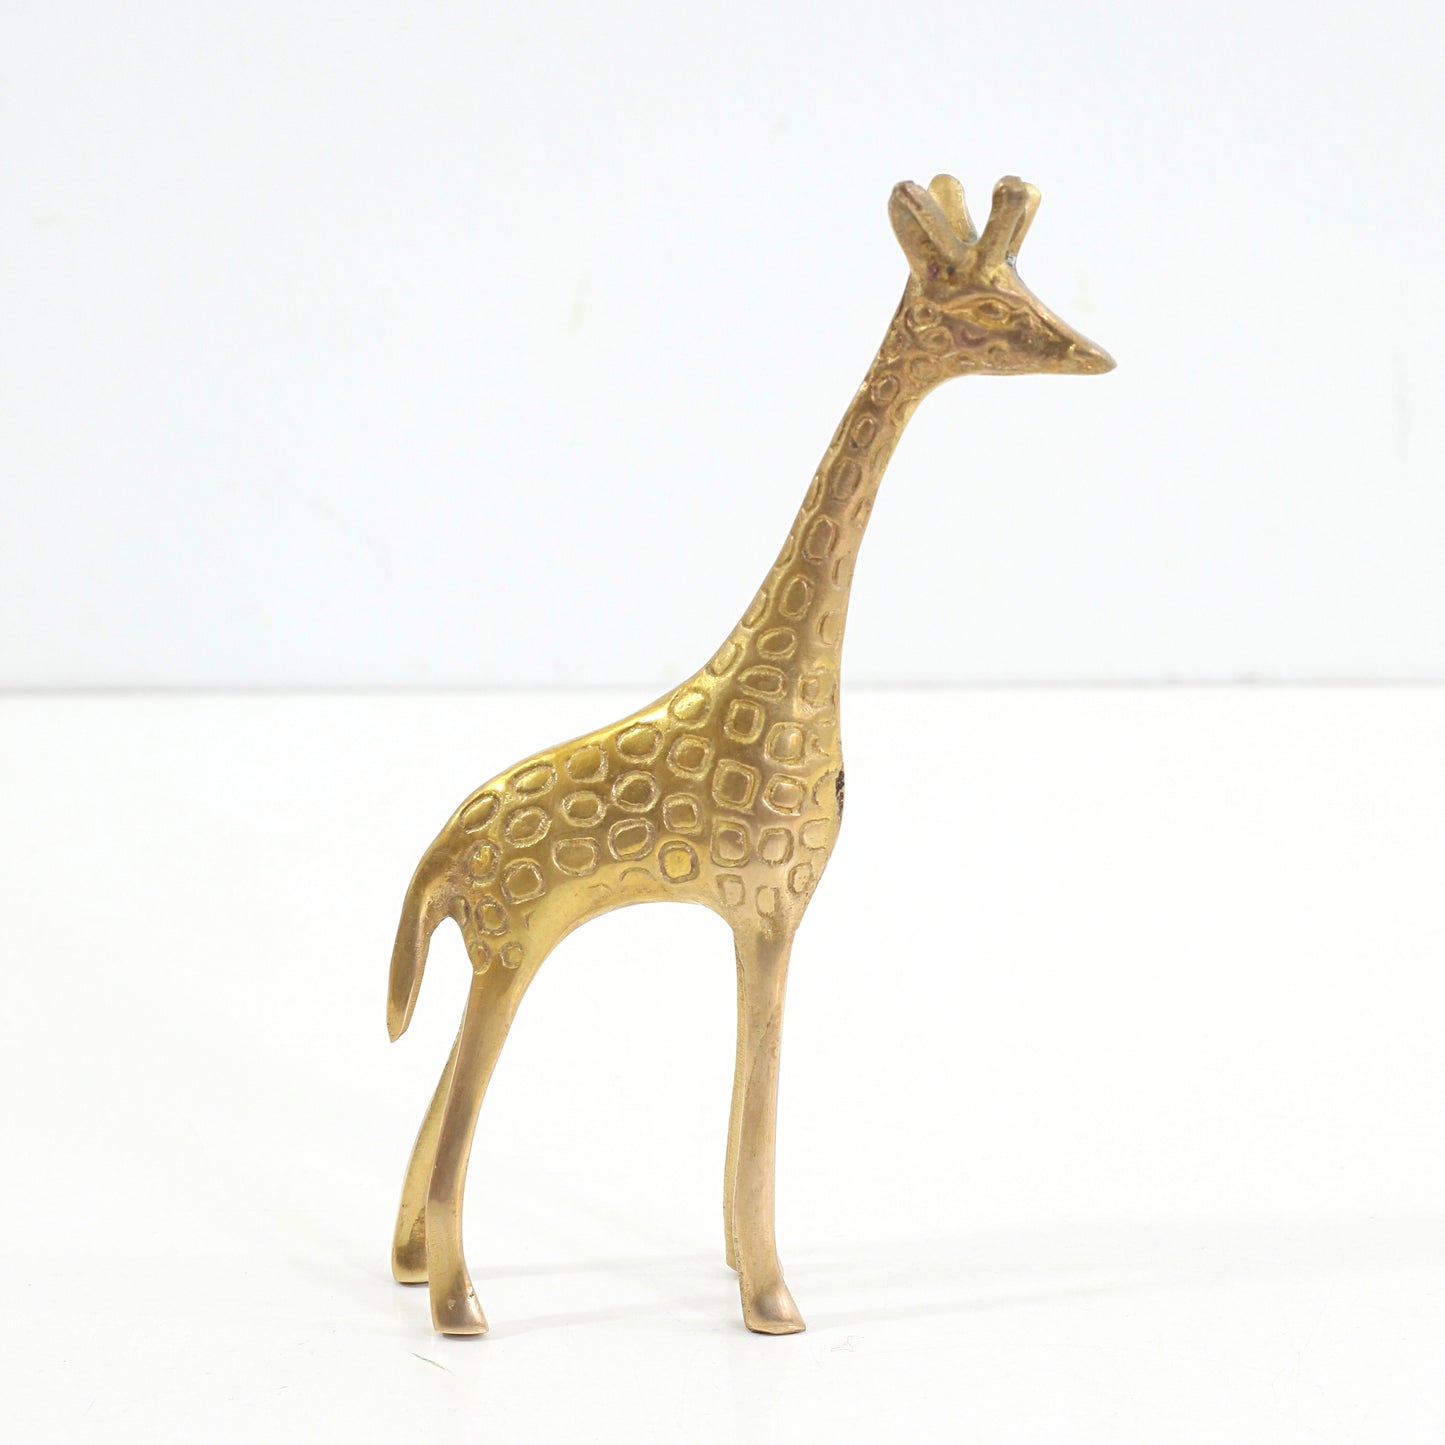 SOLD - Vintage Brass Giraffe Figurine